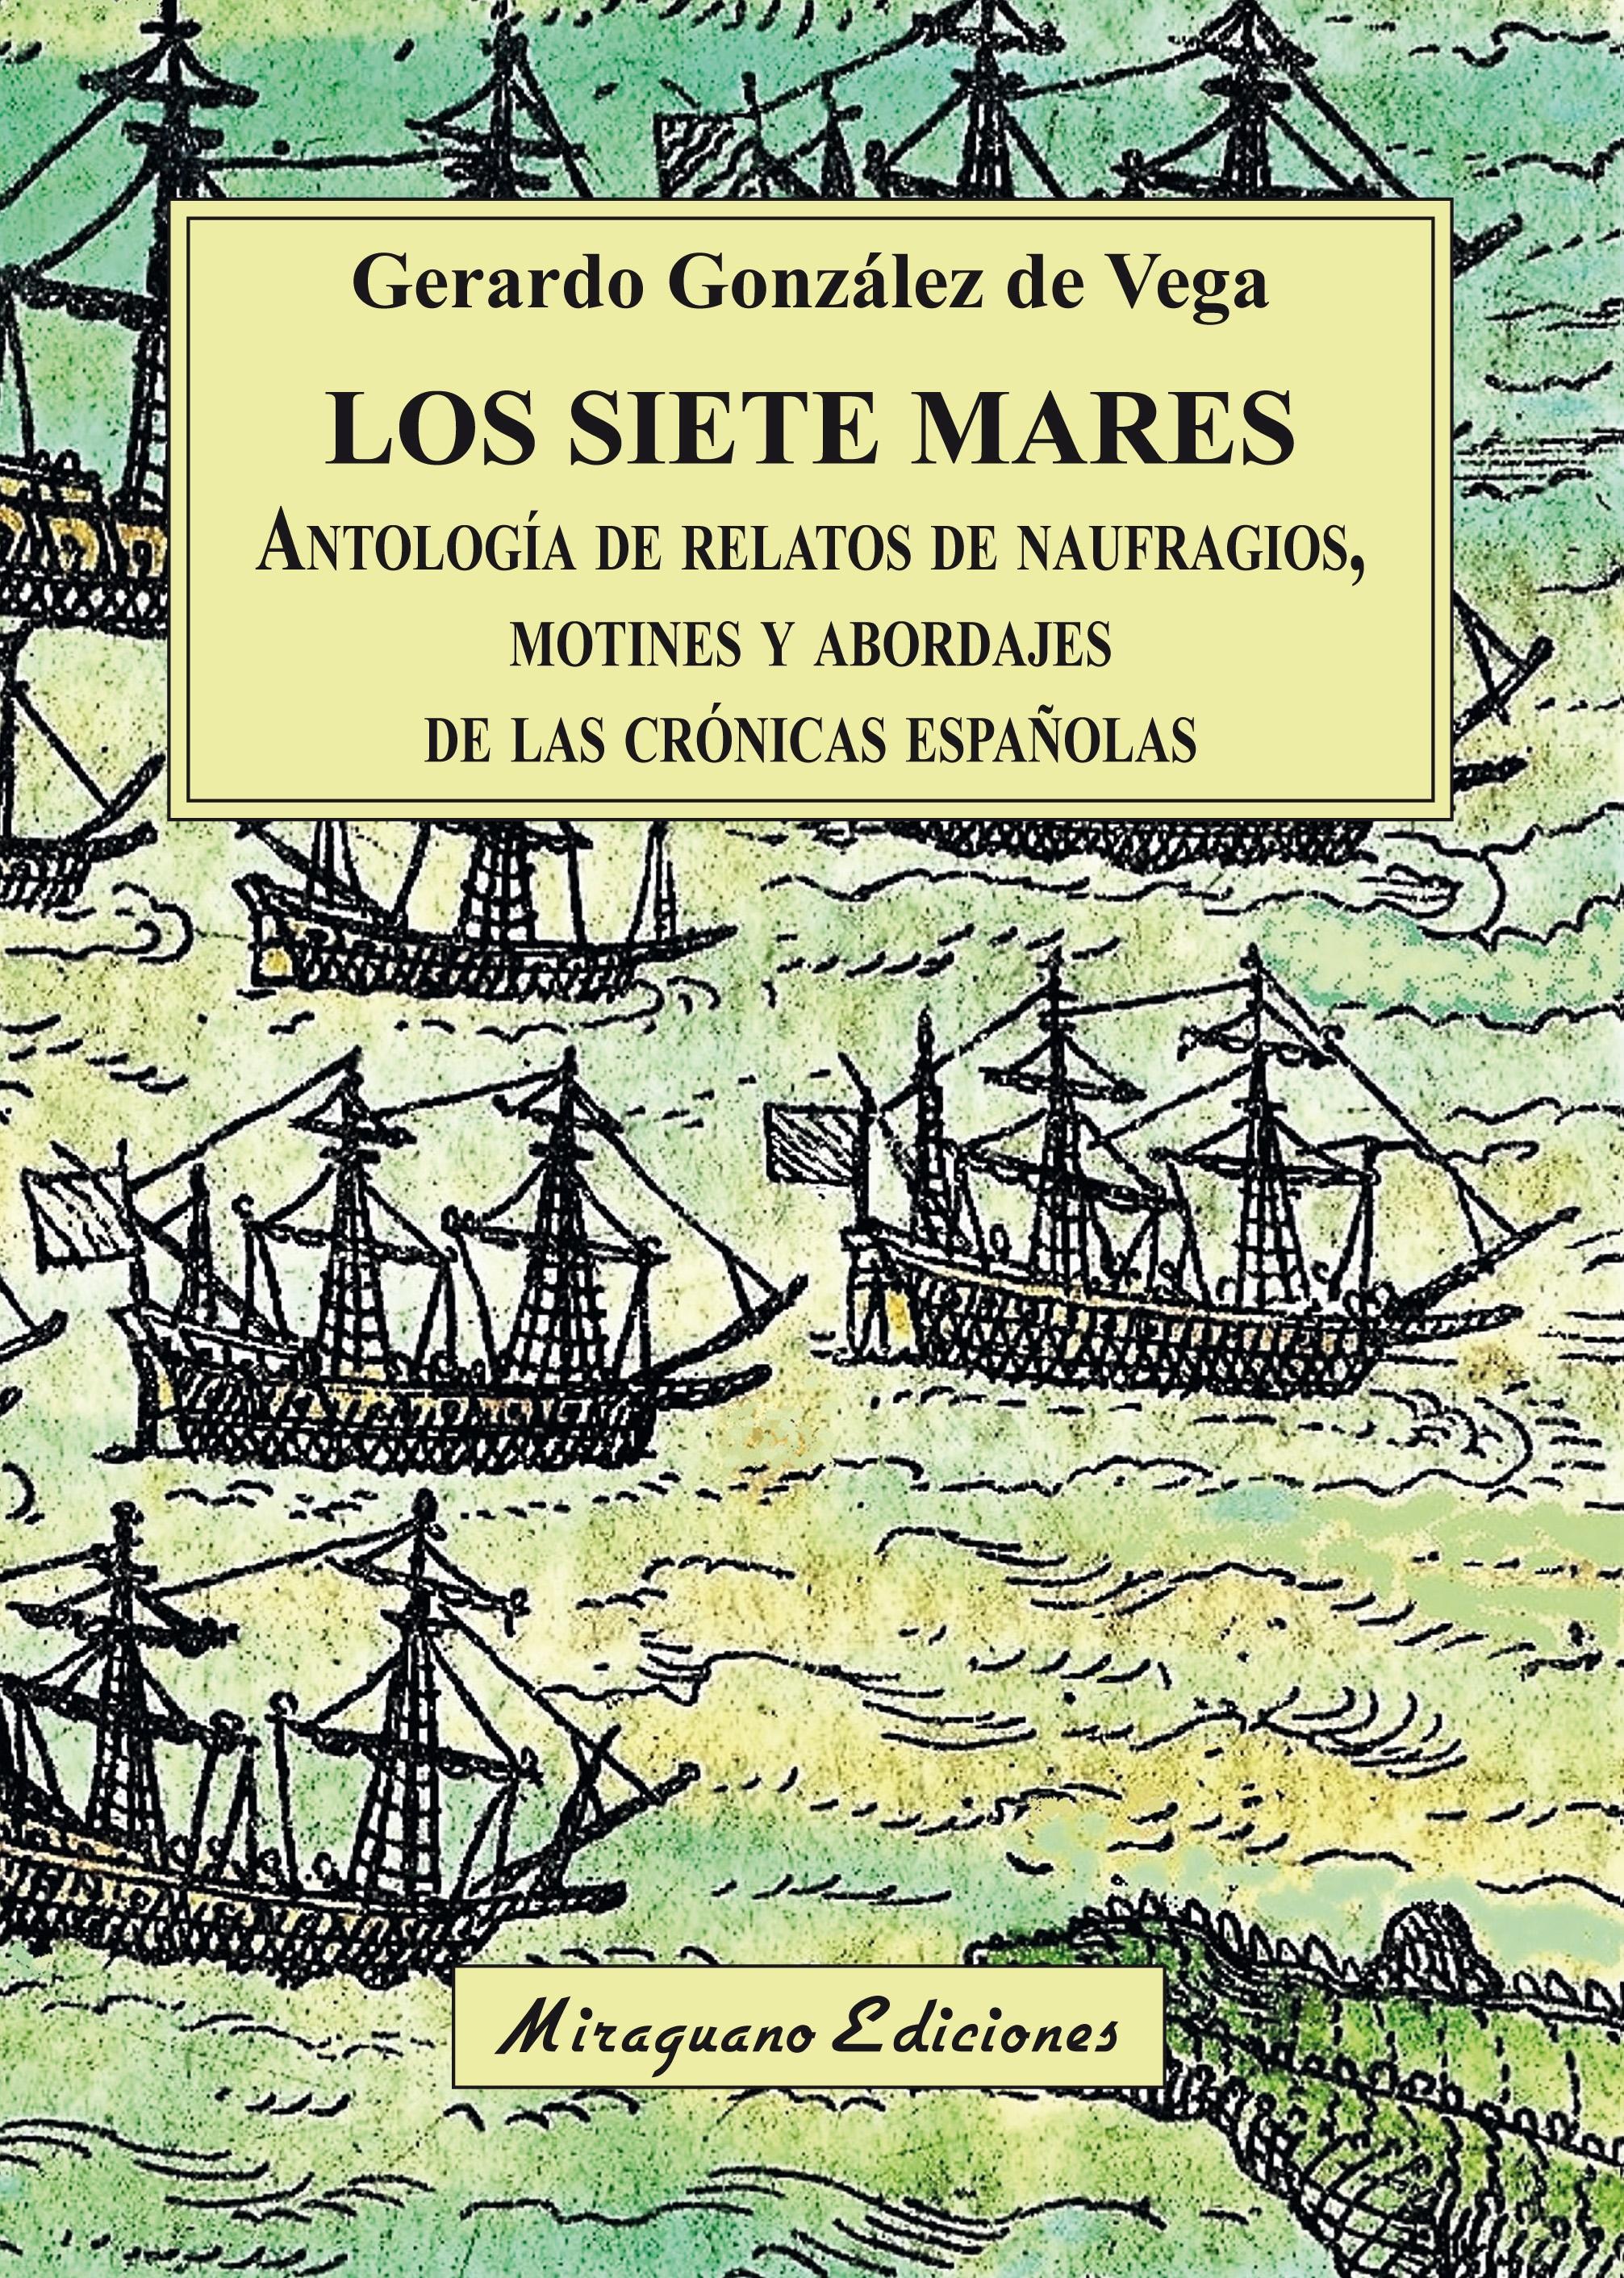 Los siete mares "Antología de relatos de naufragios, motines y abordajes de las crónicas españolas"